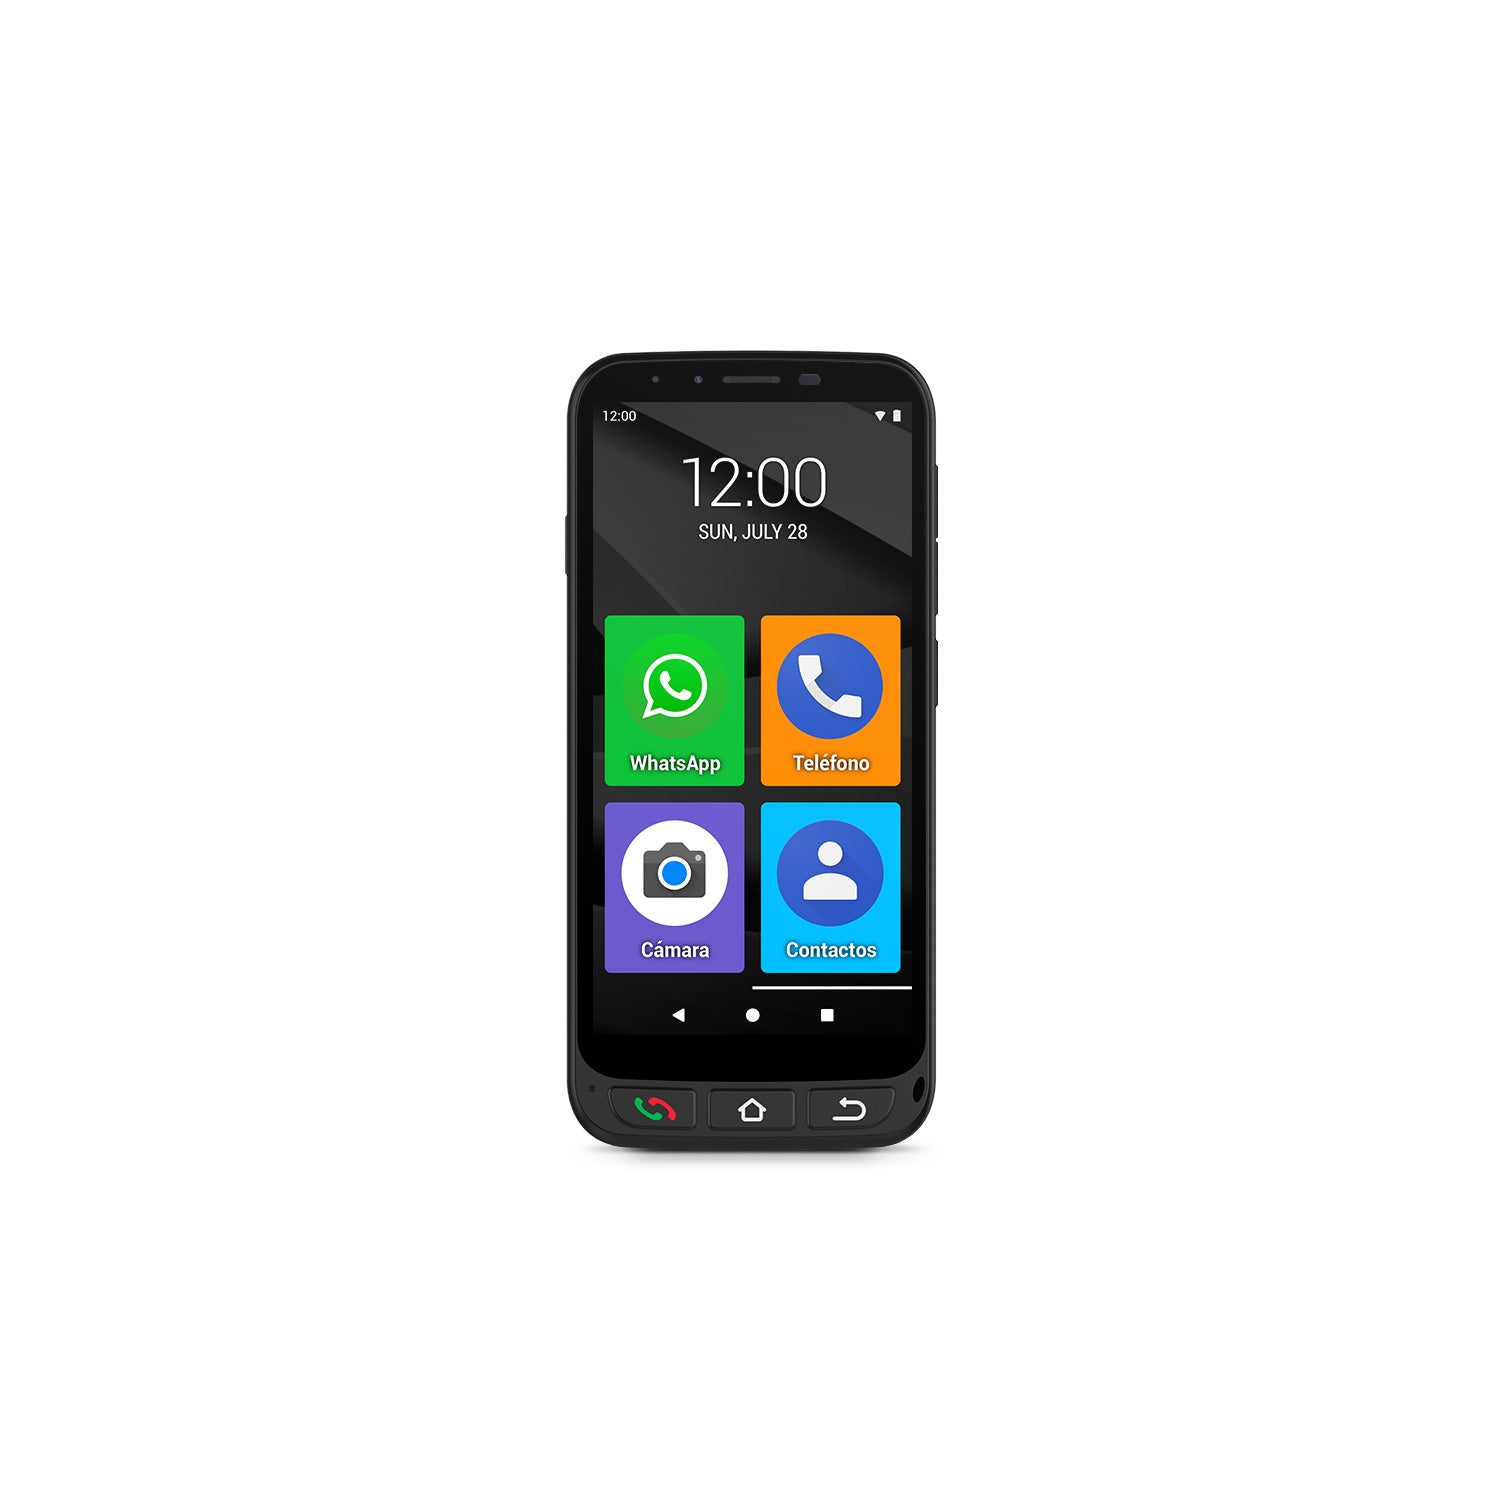 REVIEW ] Análisis del smartphone SPC Zeus 4G Pro: el teléfono